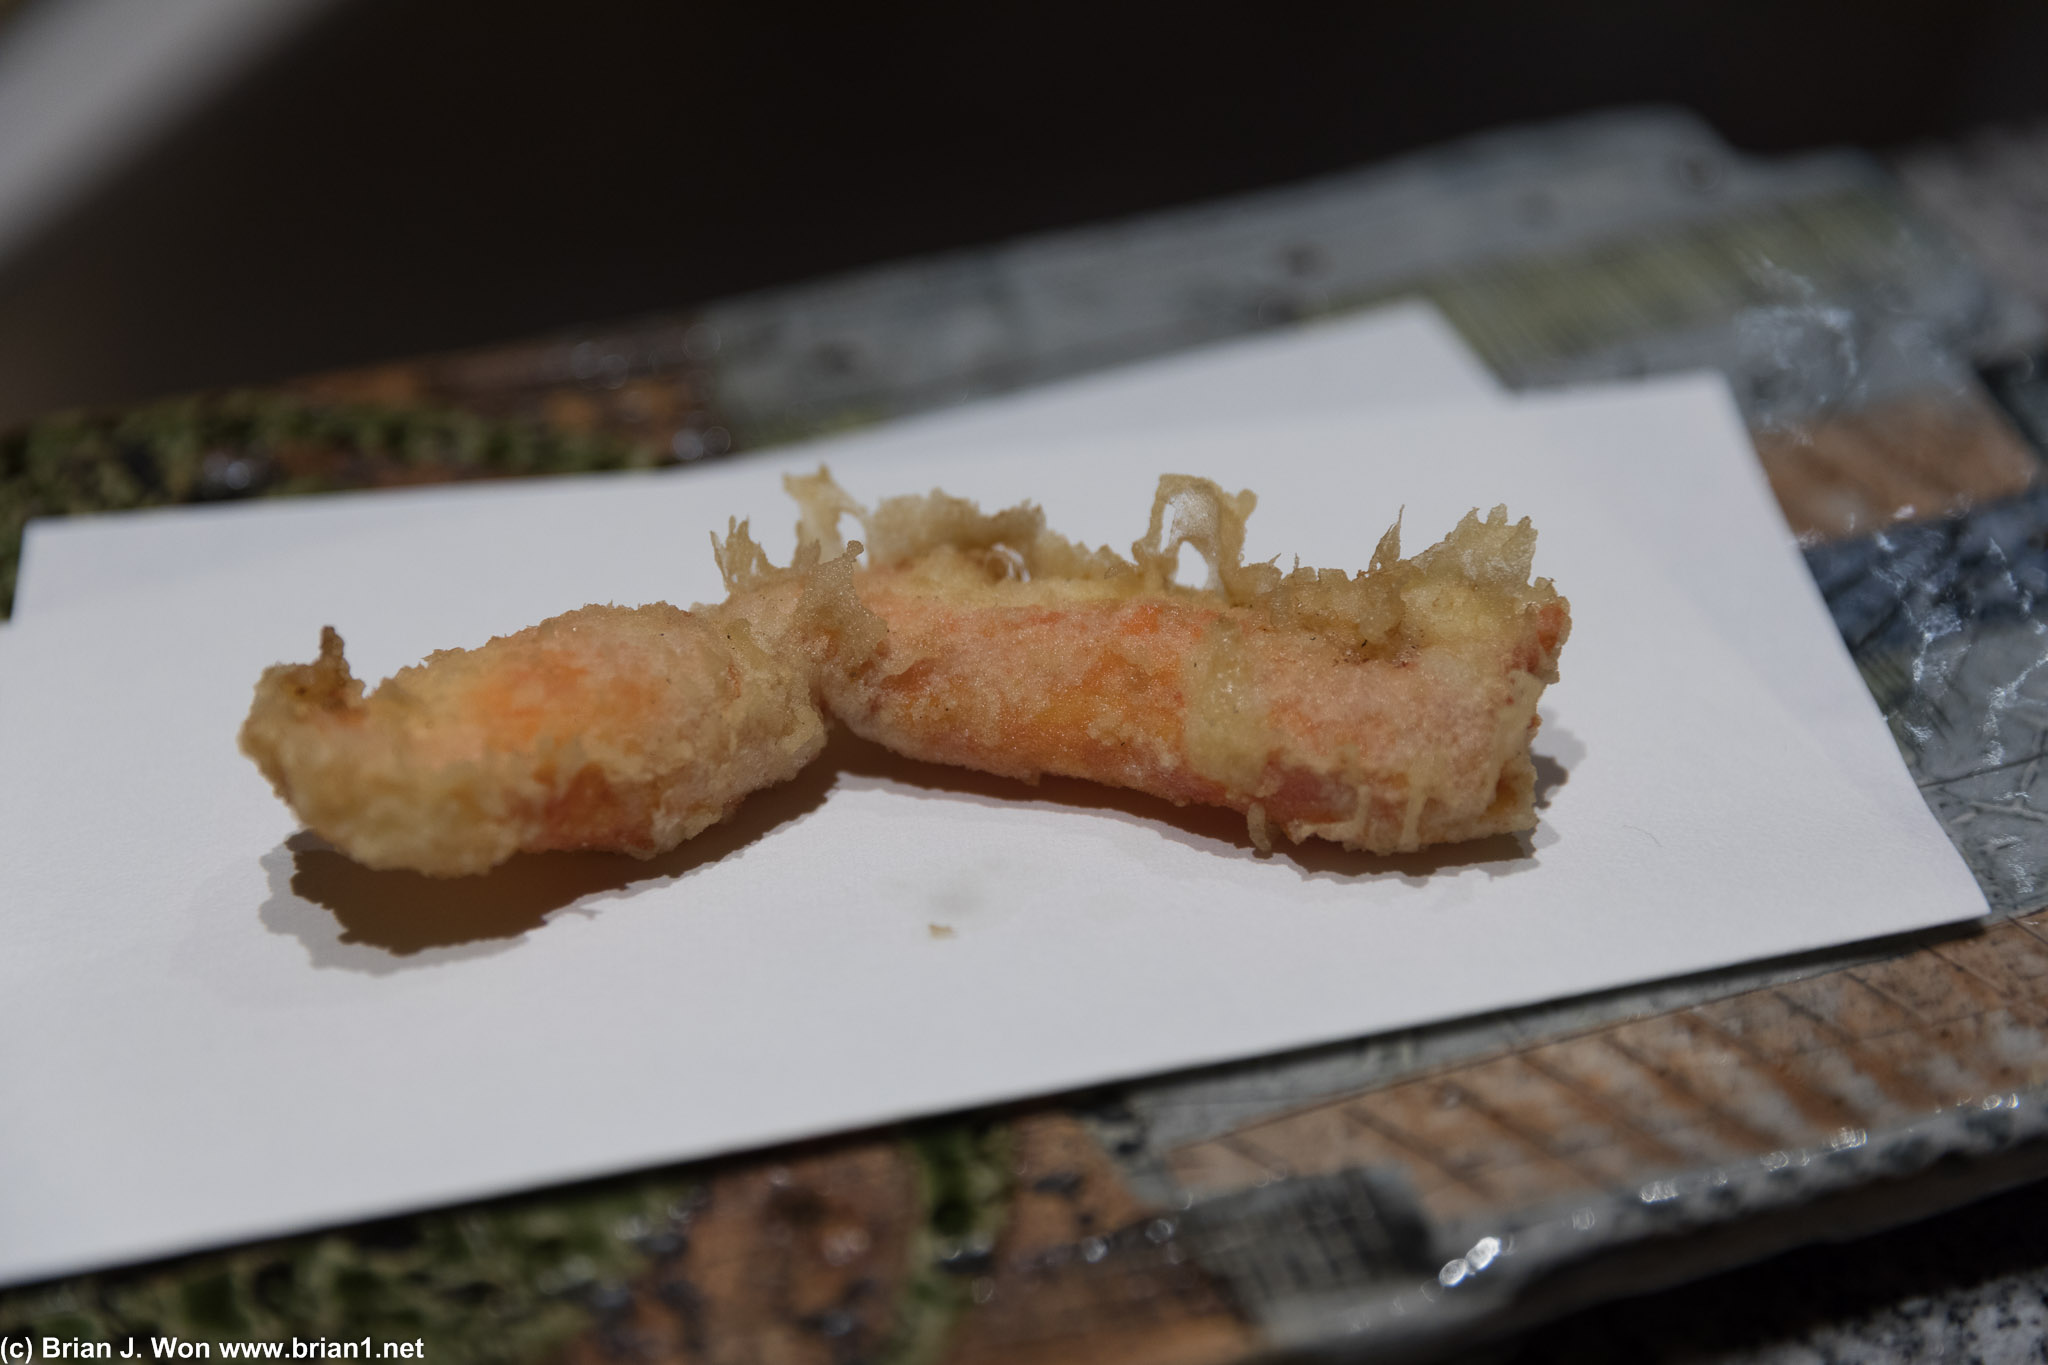 Snow crab. Again not an ideal tempura item, absorbs too much oil.